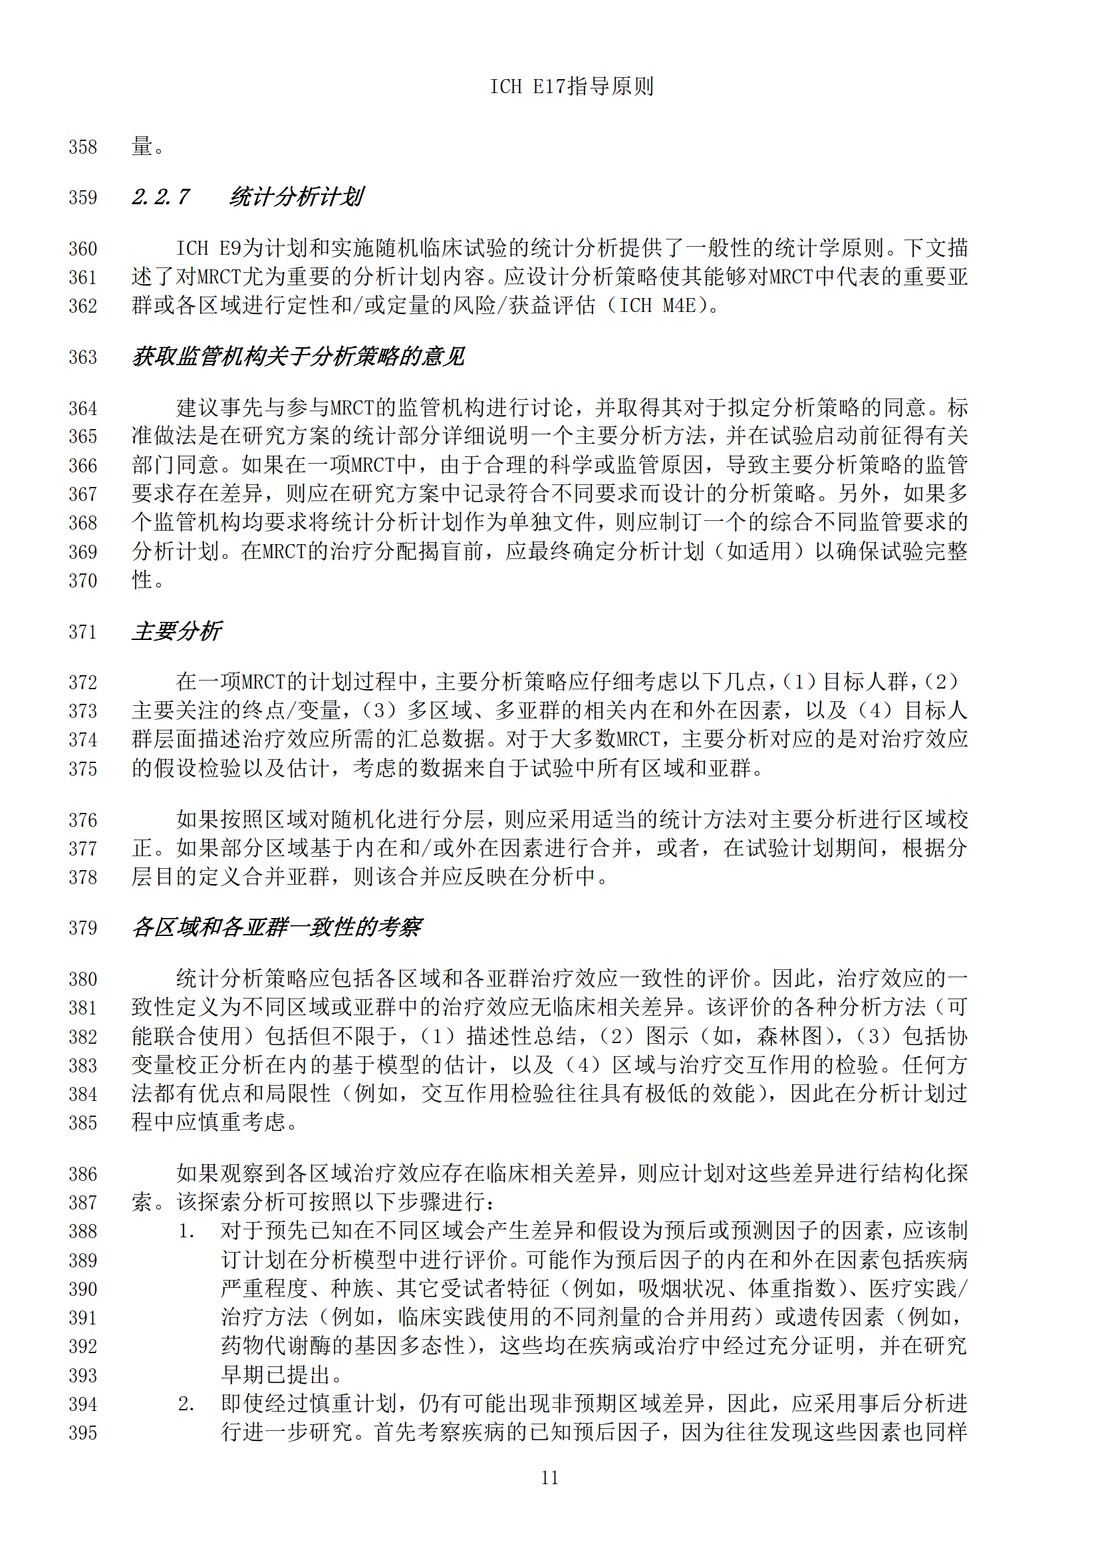 E17多区域临床试验计划与设计的一般原则（中文翻译公开征求意见稿）_14.jpg